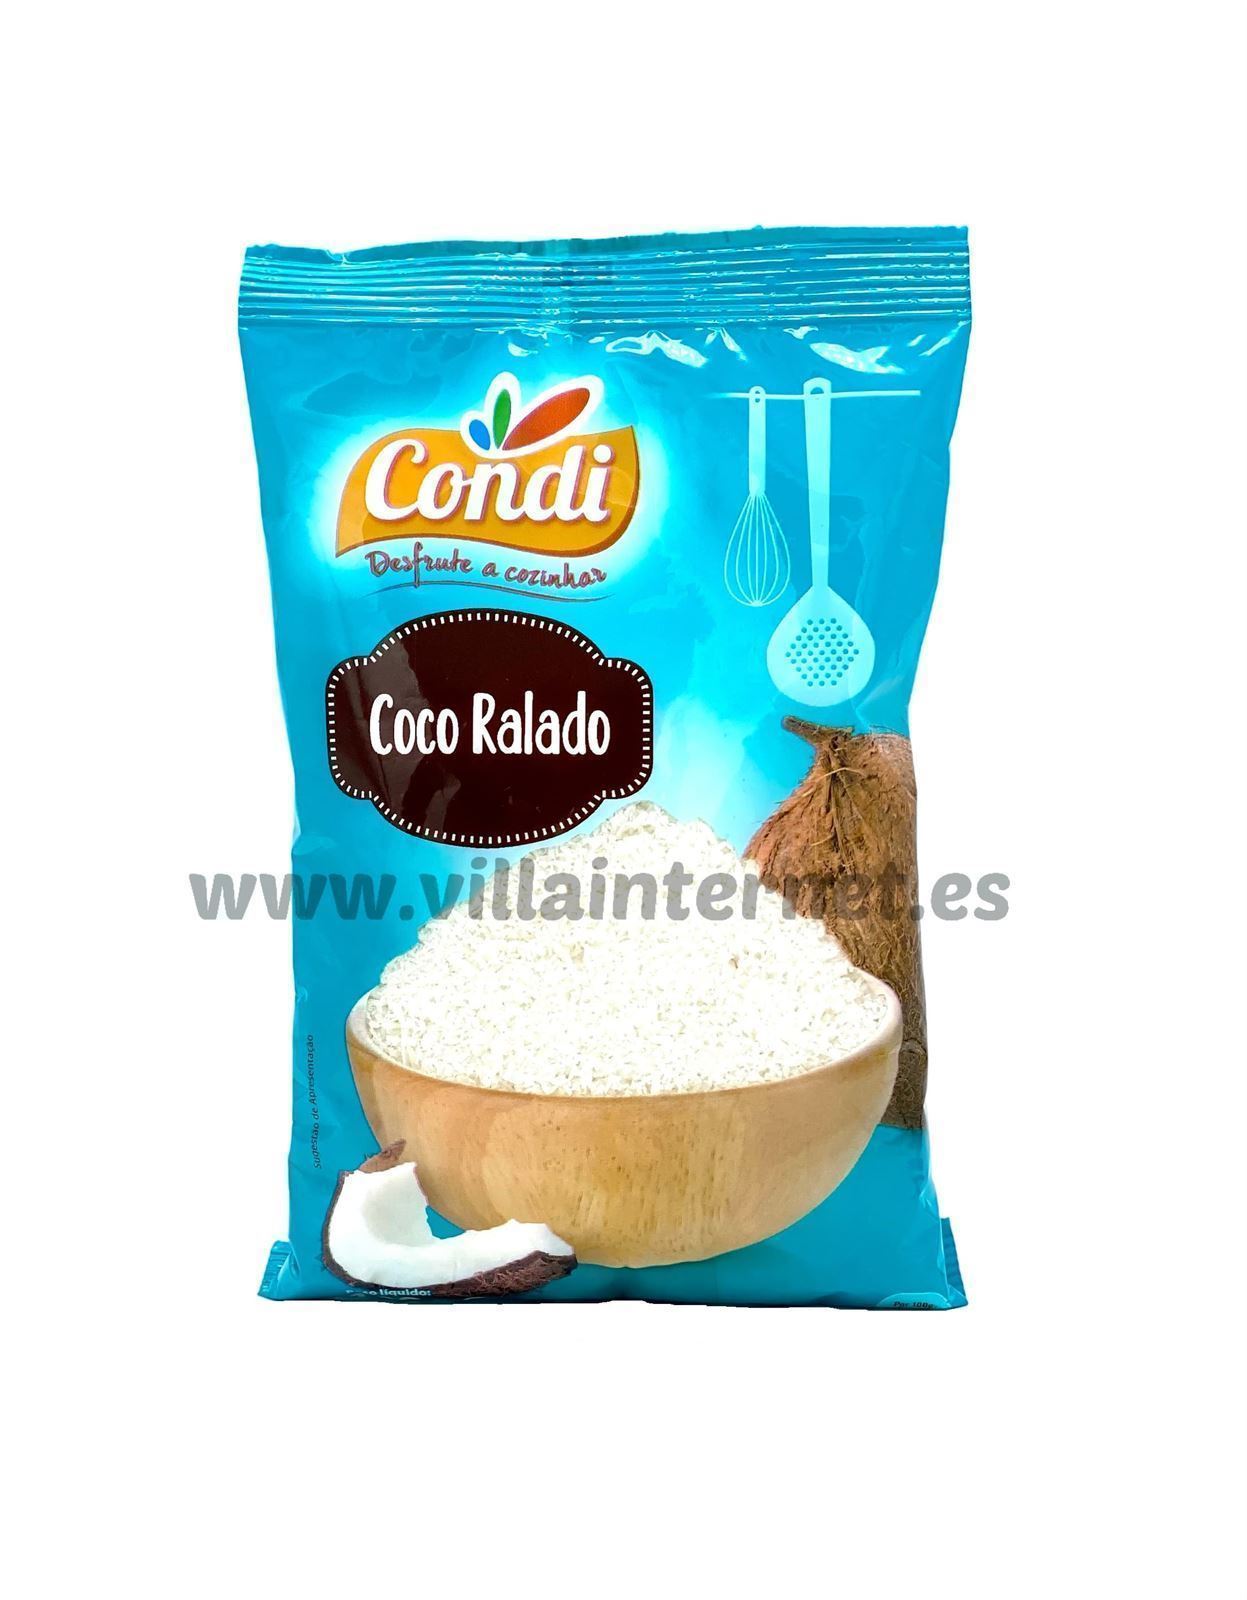 Coco rallado 100g - Imagen 1